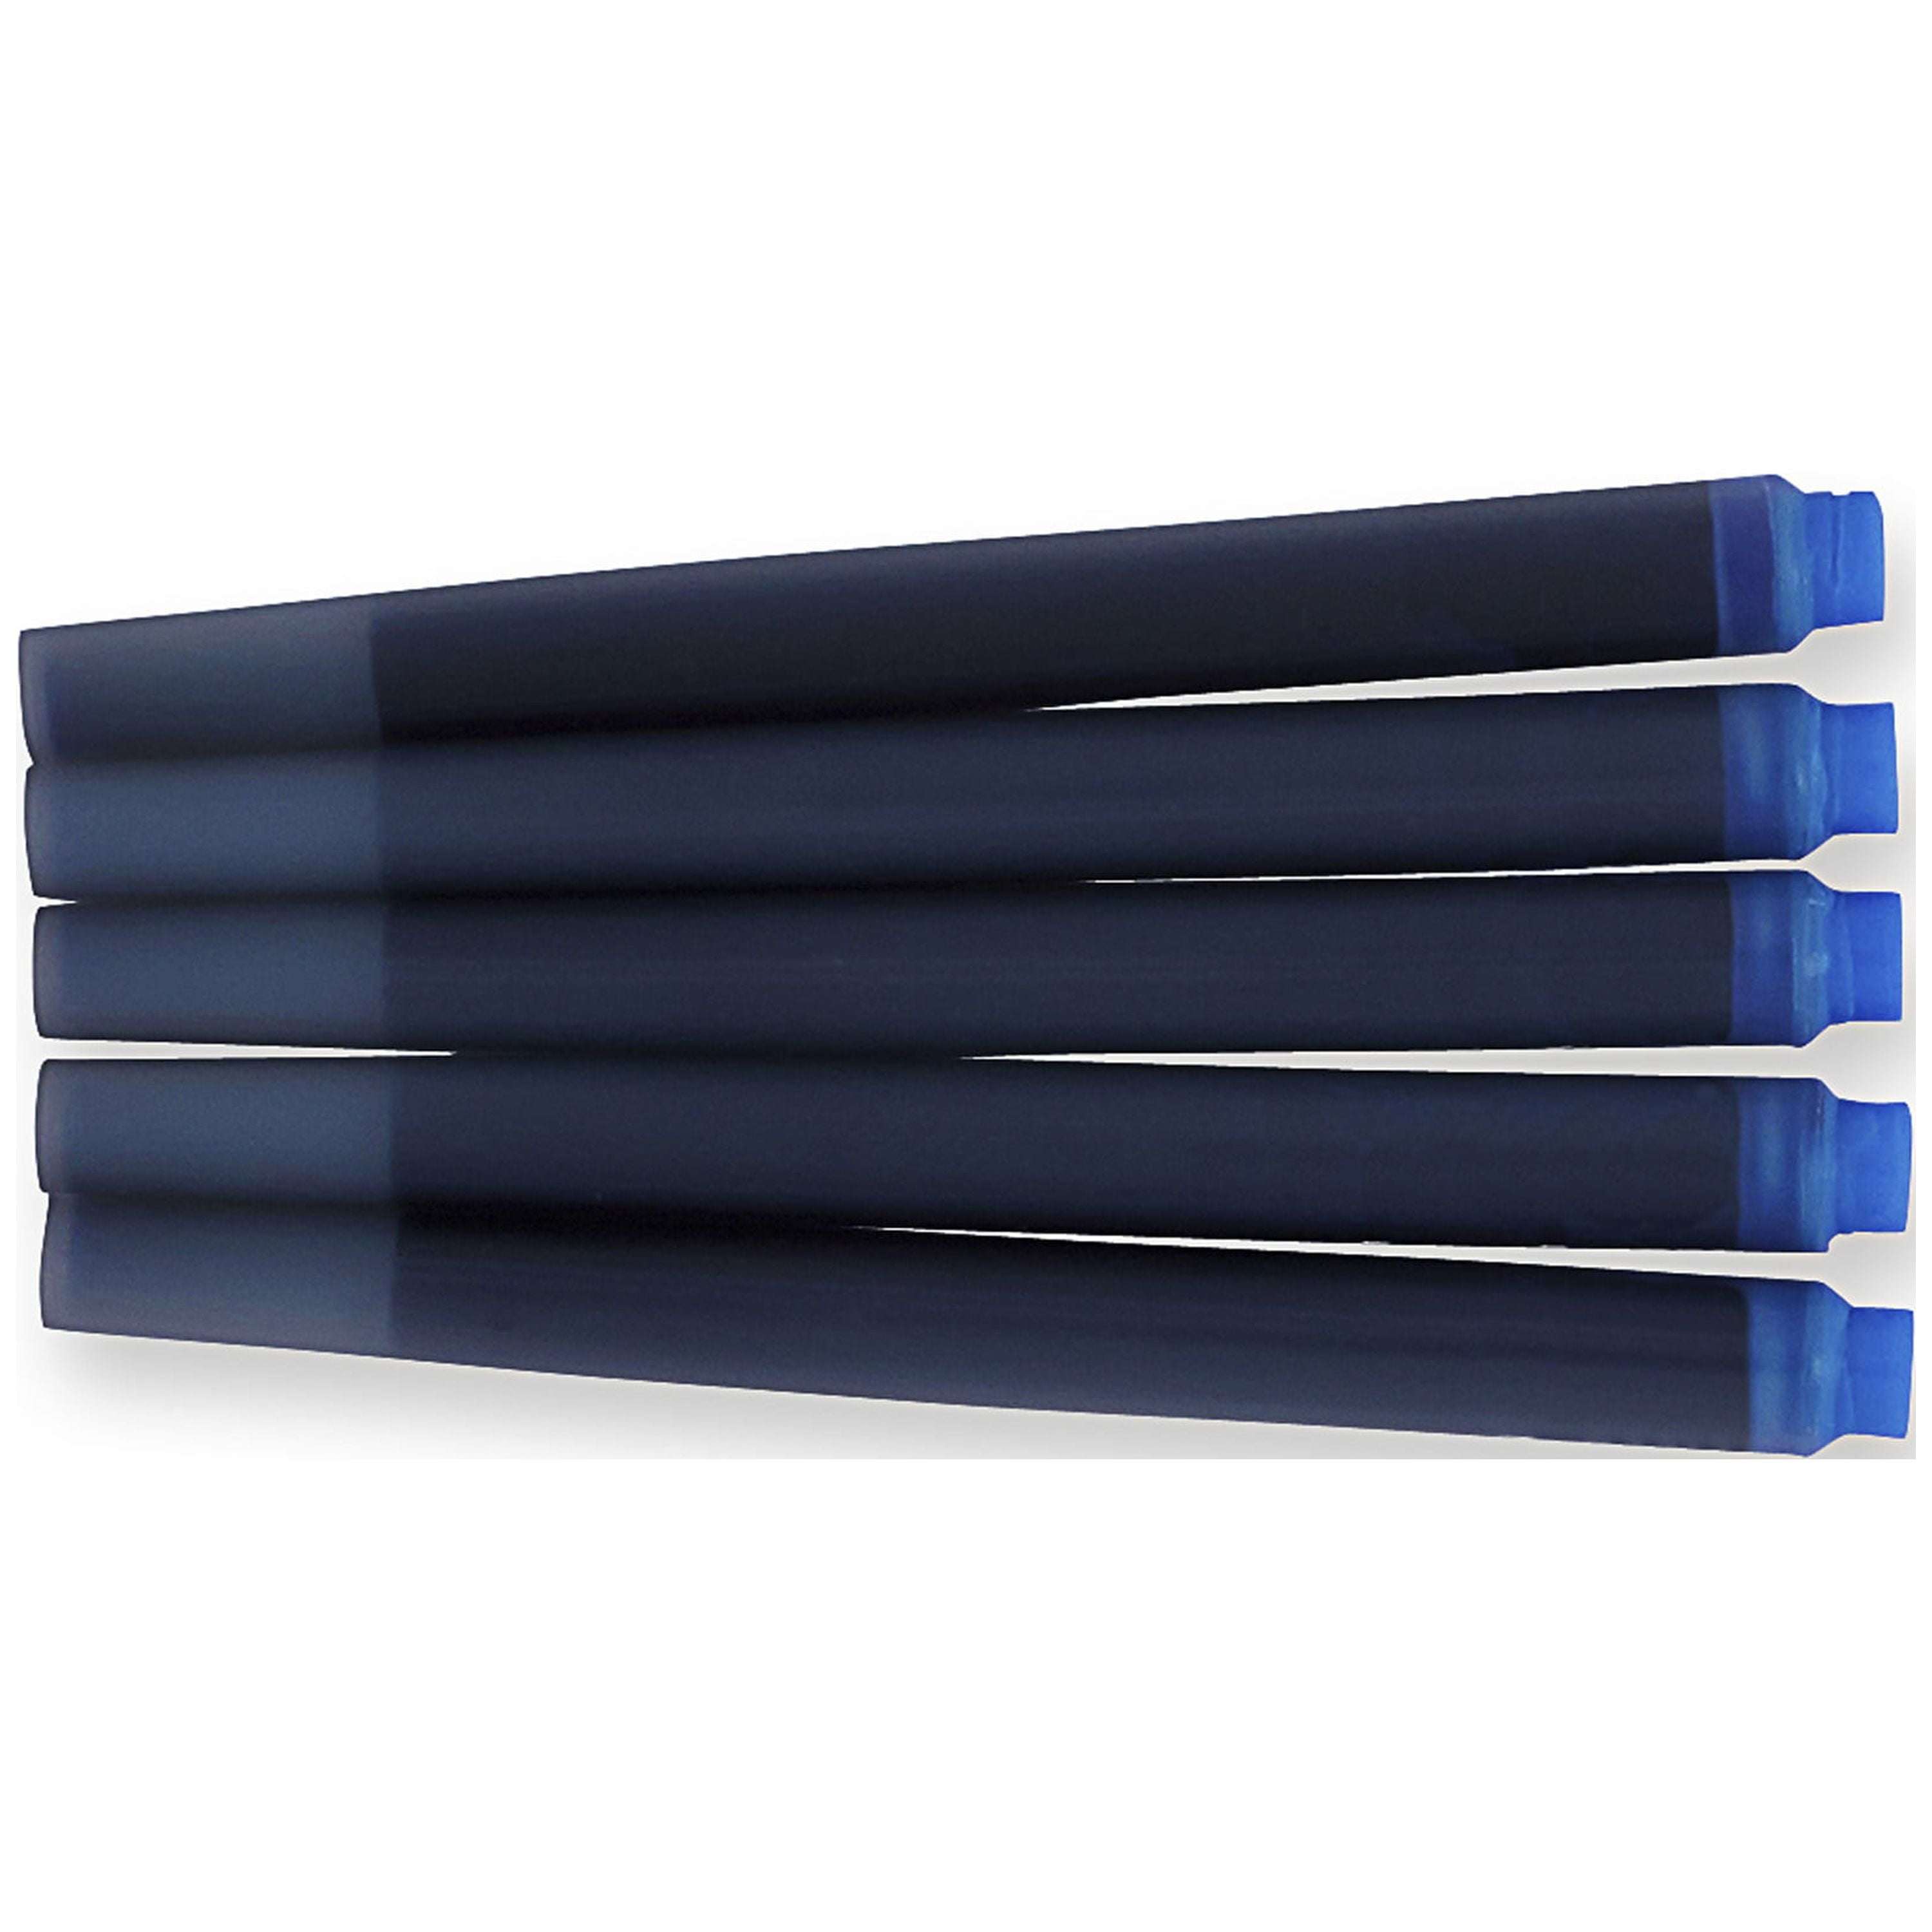 Lot de 5 - Boites de 5 Cartouches Bleues effaçables Longues Parker® Quink